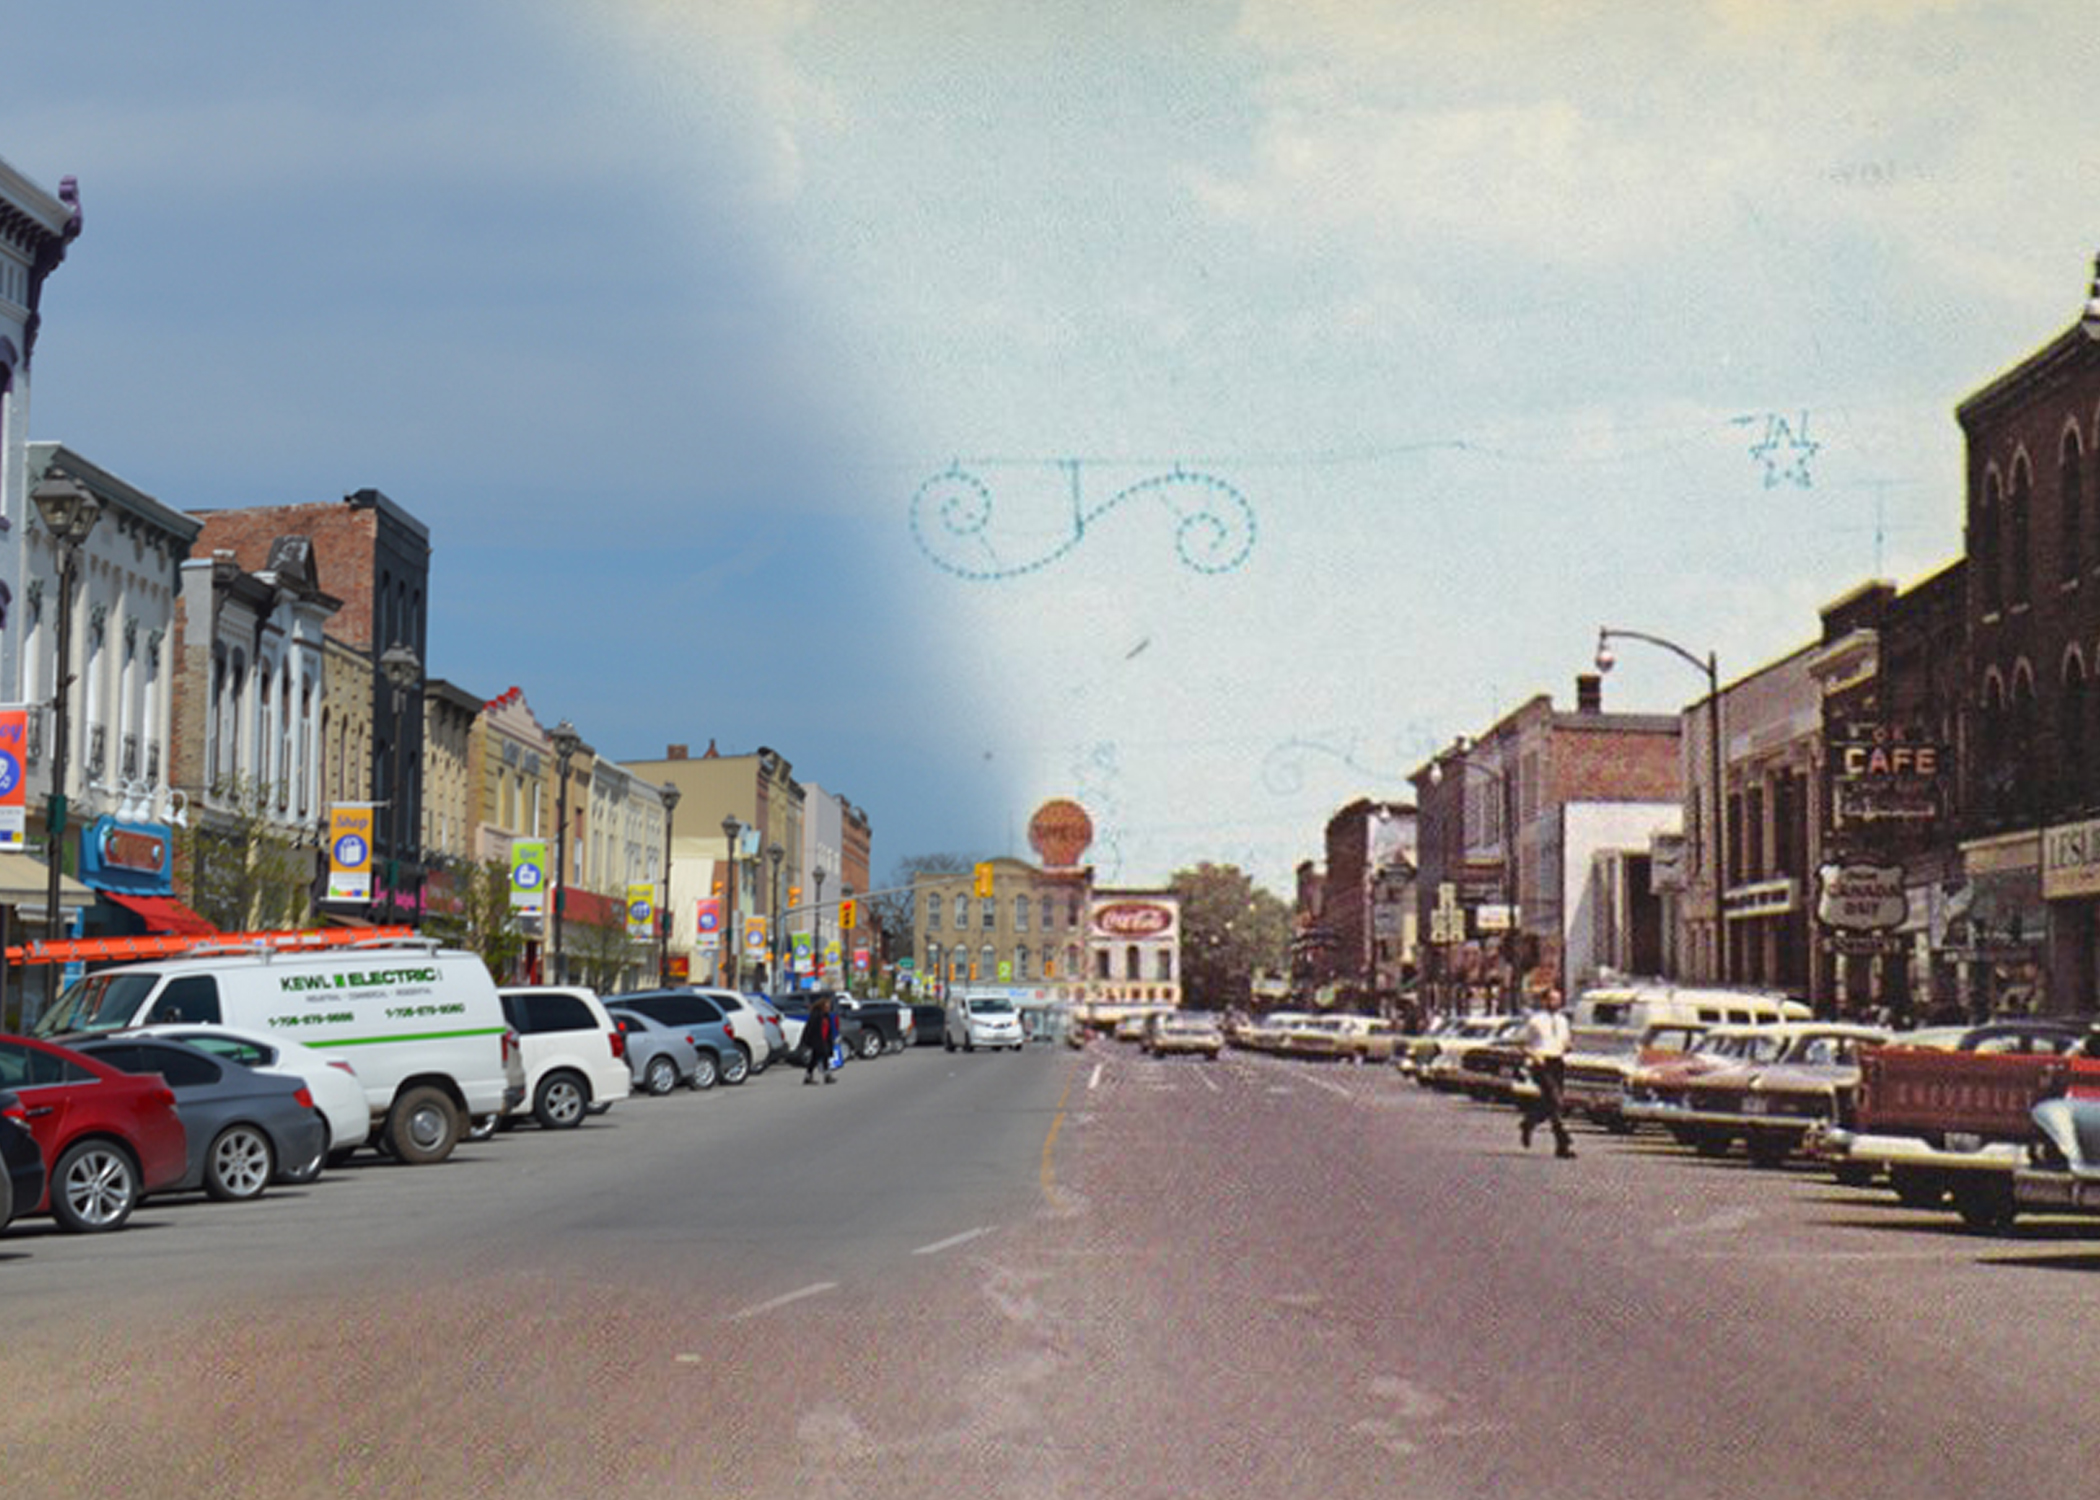 À gauche, un paysage de la rue modern; à droite, une image historique du même paysage.